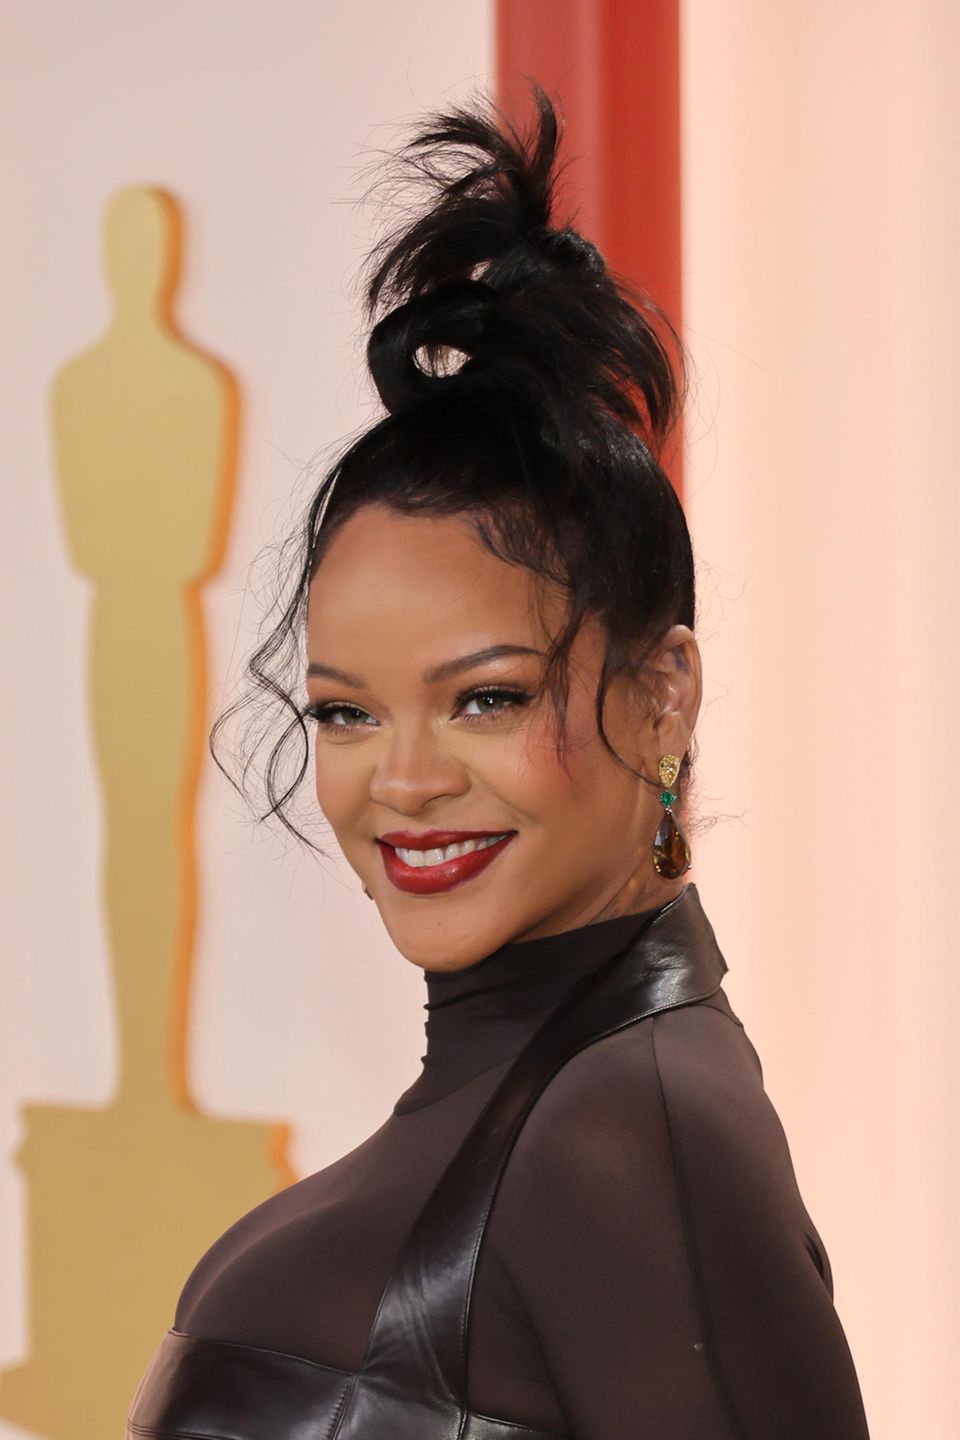 Wer dachte Rihanna hätte mit ihrer Performance beim Super Bowl DEN Auftritt des Jahres schon hinter sich, könnte seine Meinung nach den Oscars schnell revidiert haben. In typisch relaxter Rihanna-Glamour schreitet die Musikerin über den Champagner-Teppich in Los Angeles und bezaubert mit dezenten Cat-Eyes und mattrote Lippen. Highlight ist jedoch der entspannte "Palmen"-Dutt, der ganz so wirkt, als hätte Rihannas Hairstylist diesen erst kurz vor der Award Show zusammengezwirbelt. Cooler geht's nicht!